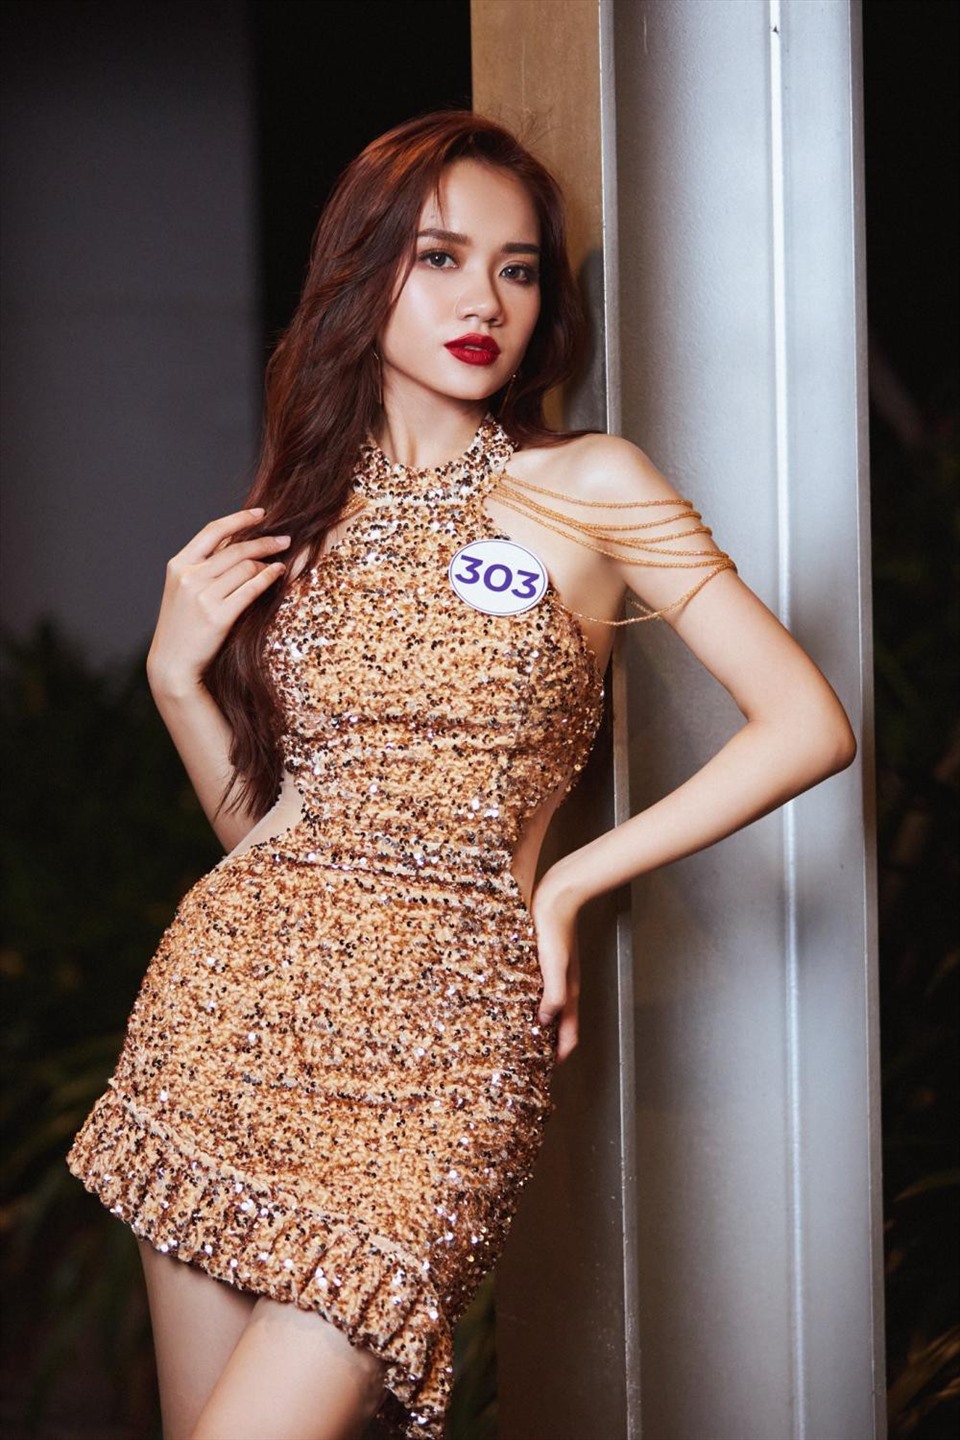 Thùy Dương sở hữu chiều cao 1m68, số đo hình thể 85-62-92. Cô từng đại diện Việt Nam tham gia Miss World University 2017, giành danh hiệu Á khôi 1 cuộc thi Hoa khôi miền Trung, và cũng từng lọt vào Top 10 cuộc thi Hoa hậu Hữu nghị ASEAN 2017 được tổ chức tại Việt Nam.